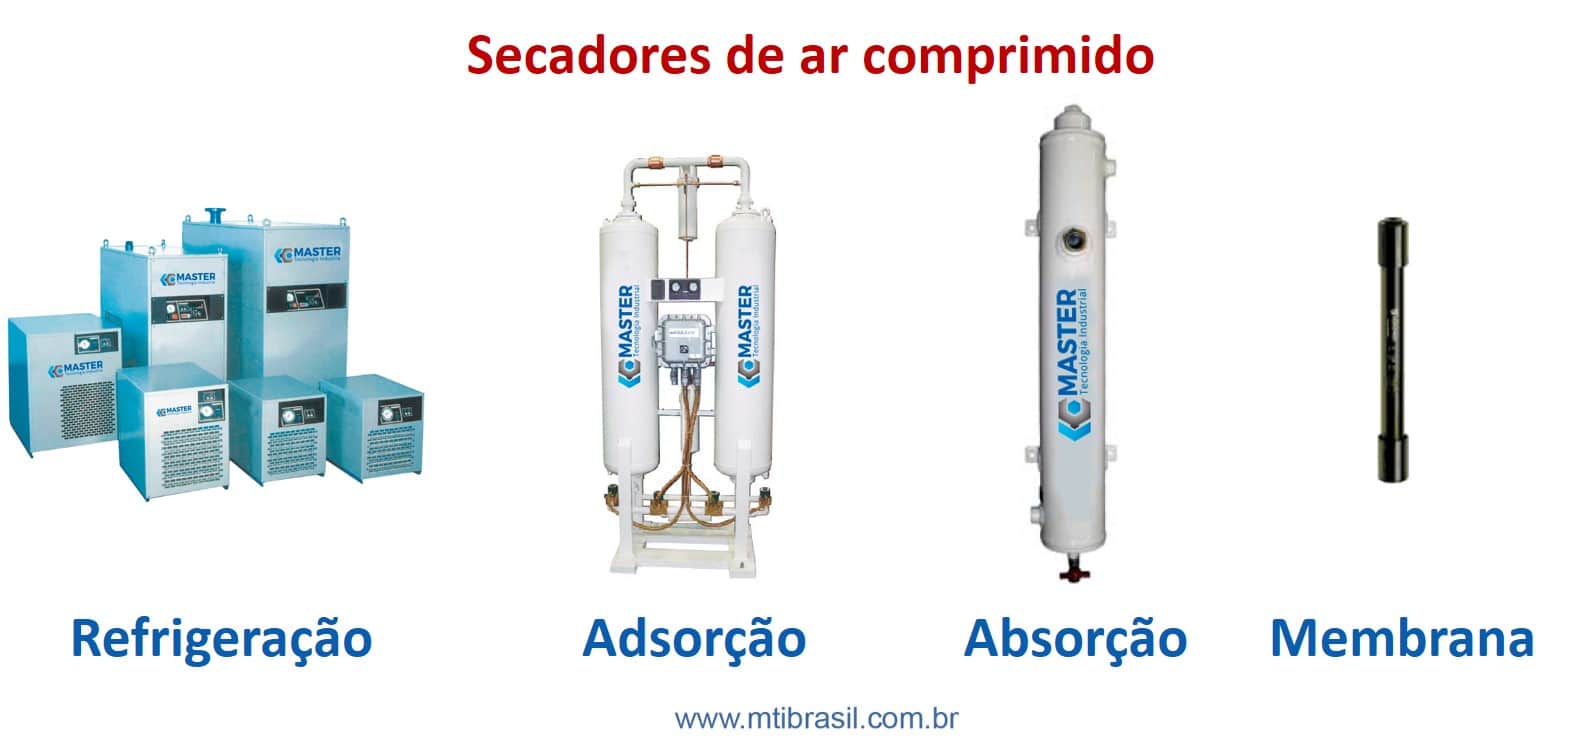 imagem mostrando os tipos de secadores para ar comprimido